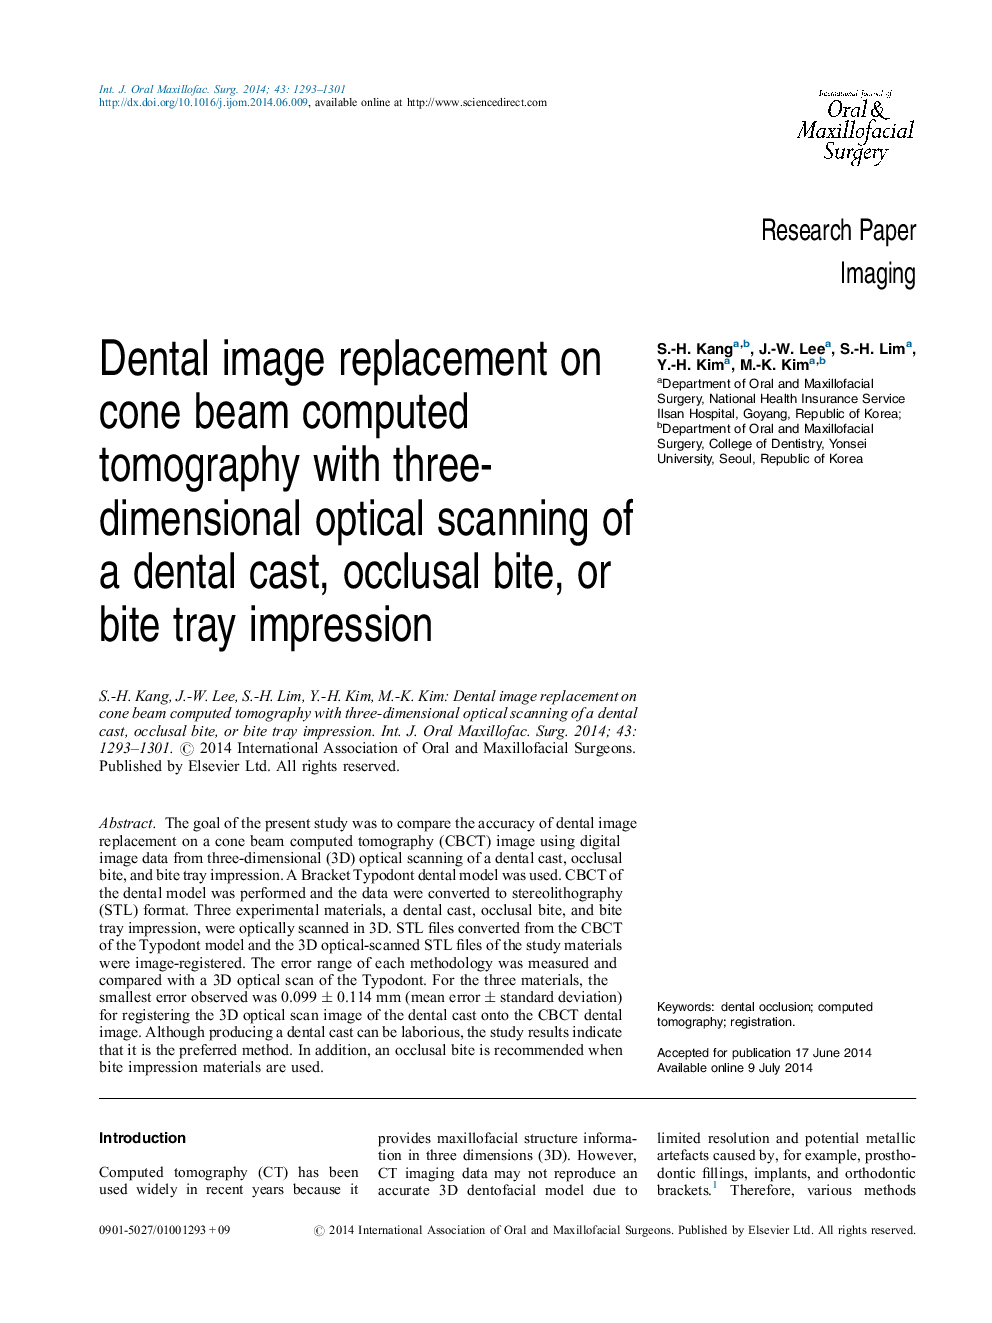 جایگزینی تصویر دندانی بر روی توموگرافی کامپوزیت پرتوهای مخروطی با اسکن سه بعدی نوری یک بازیگران دندانپزشکی، ناهنجاری اکلوزال یا تصفیه سینی نیشکر 